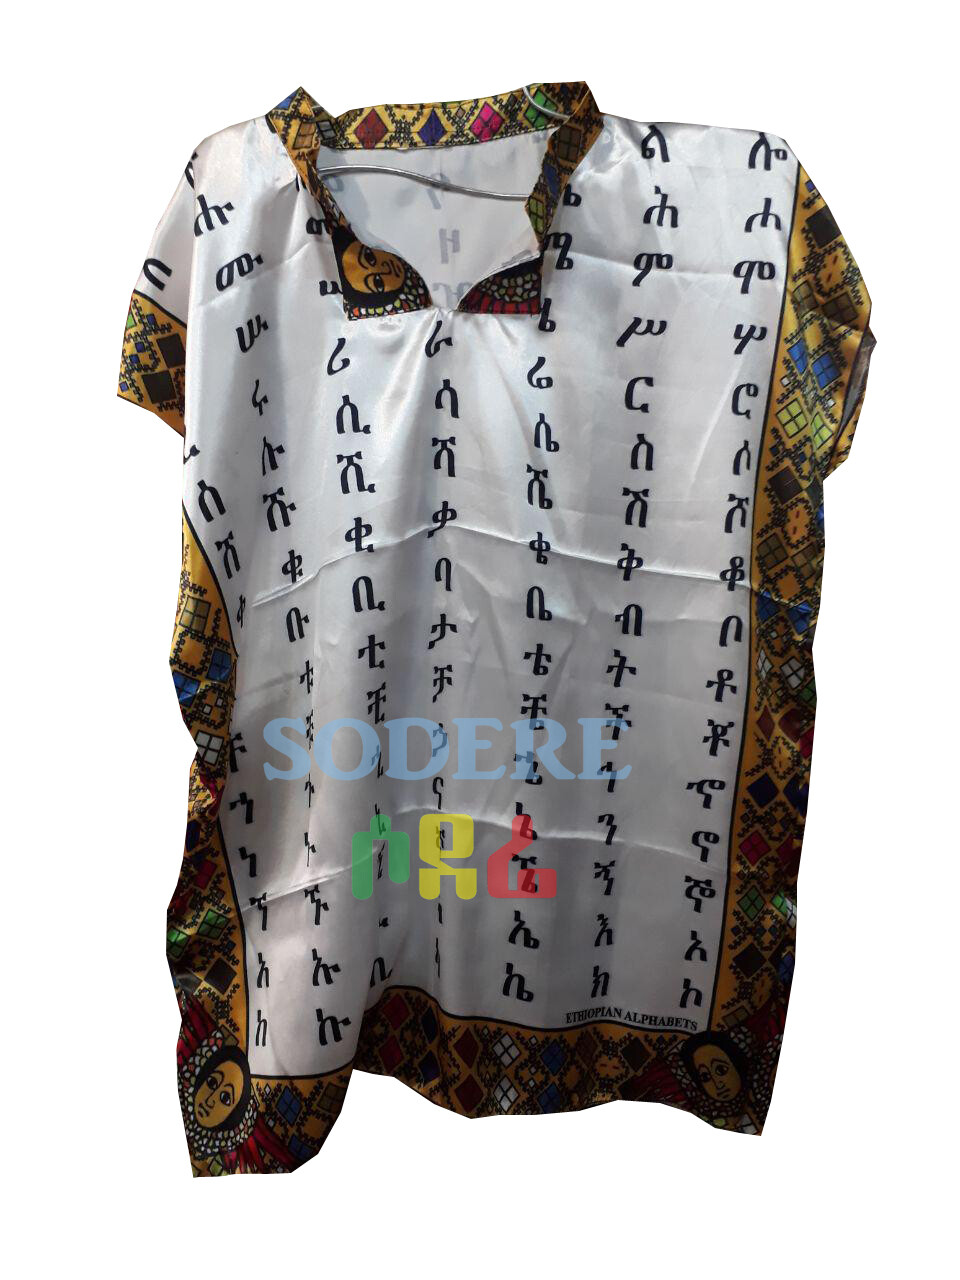 የአማርኛ ፊደሎች ያሉበት የወንዶች አላባሽ Amharic letter t-shirts